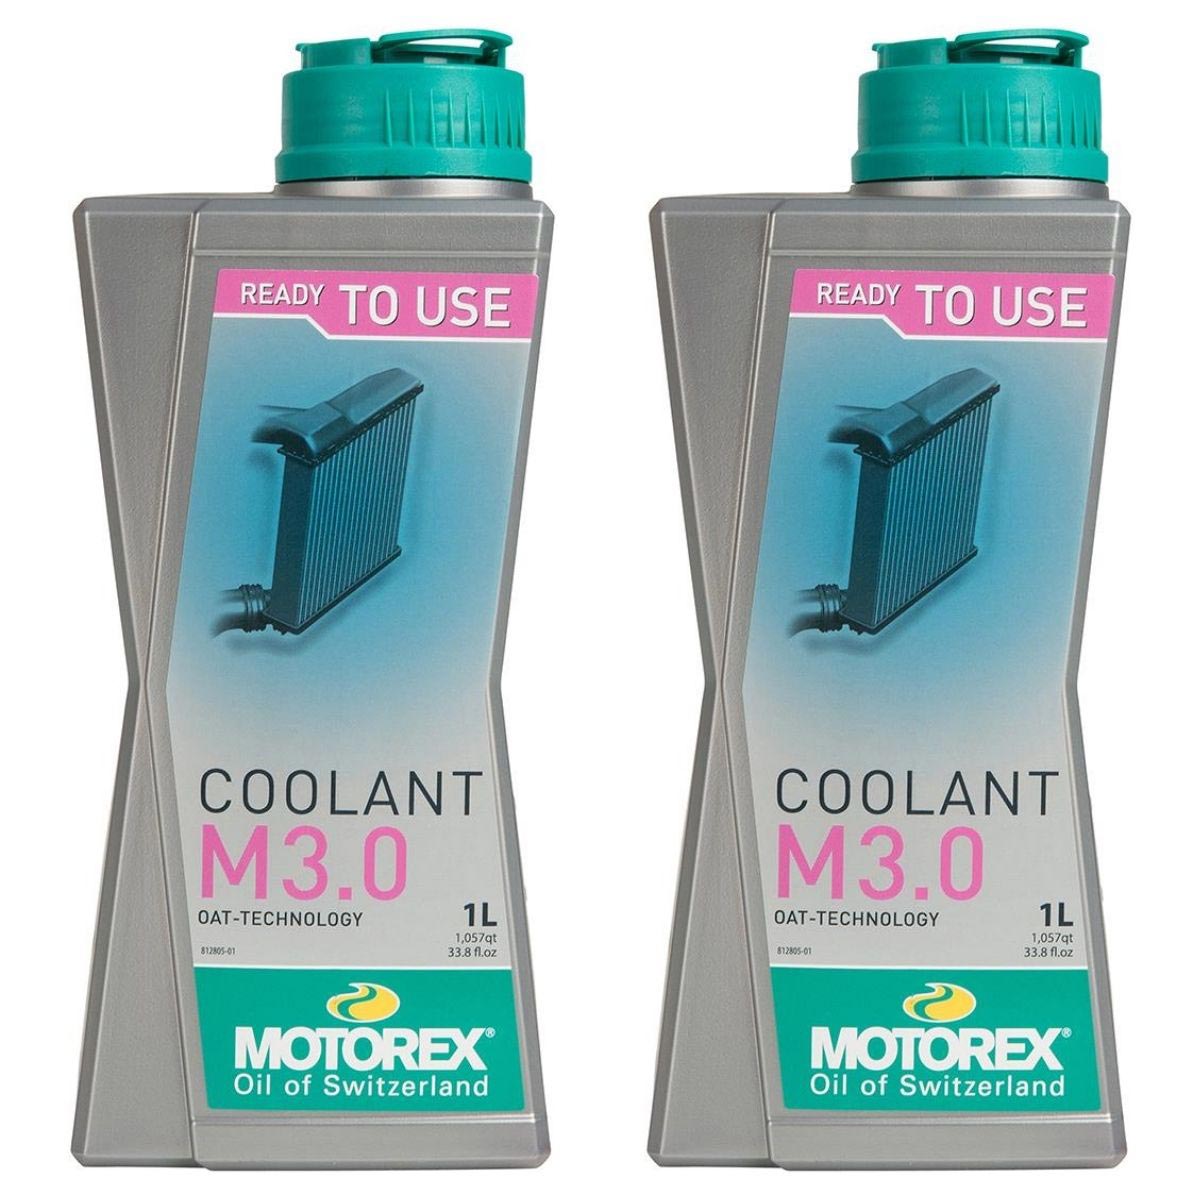 Motorex Coolant Coolant M 3.0 Set of 2, 1 L each